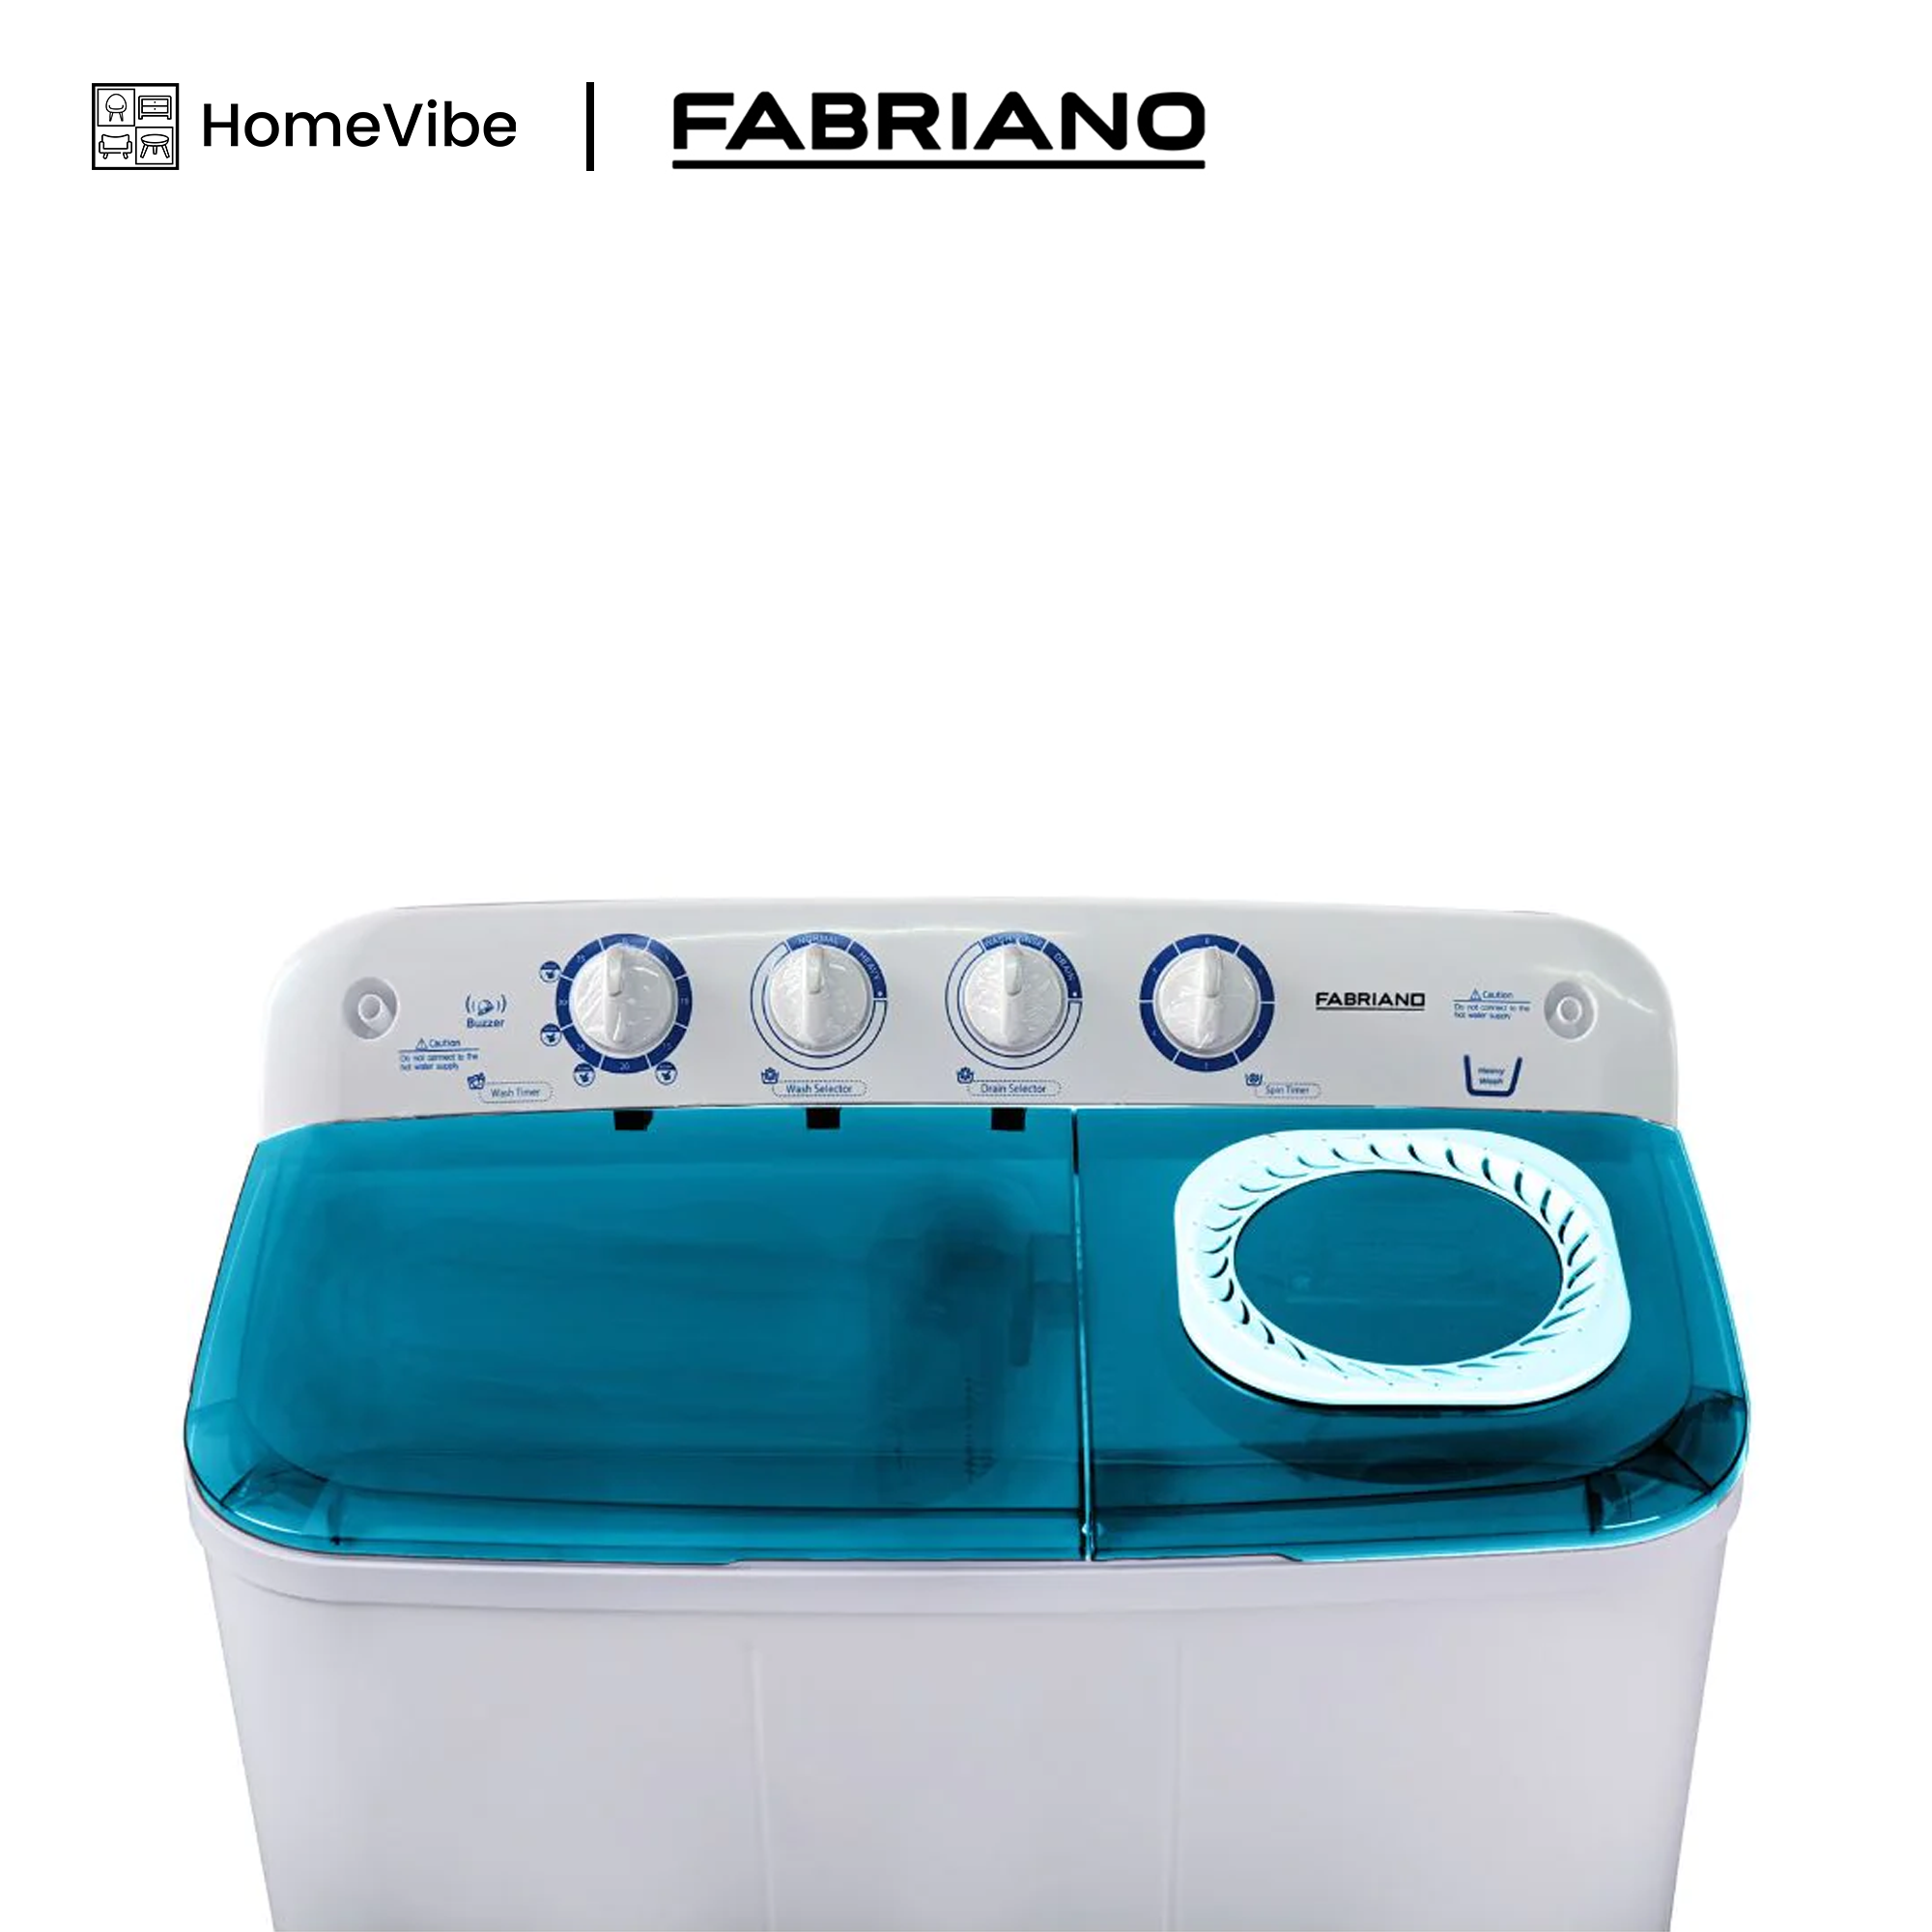 Fabriano 10kg Twintub Washing Machine FTTM10BWH